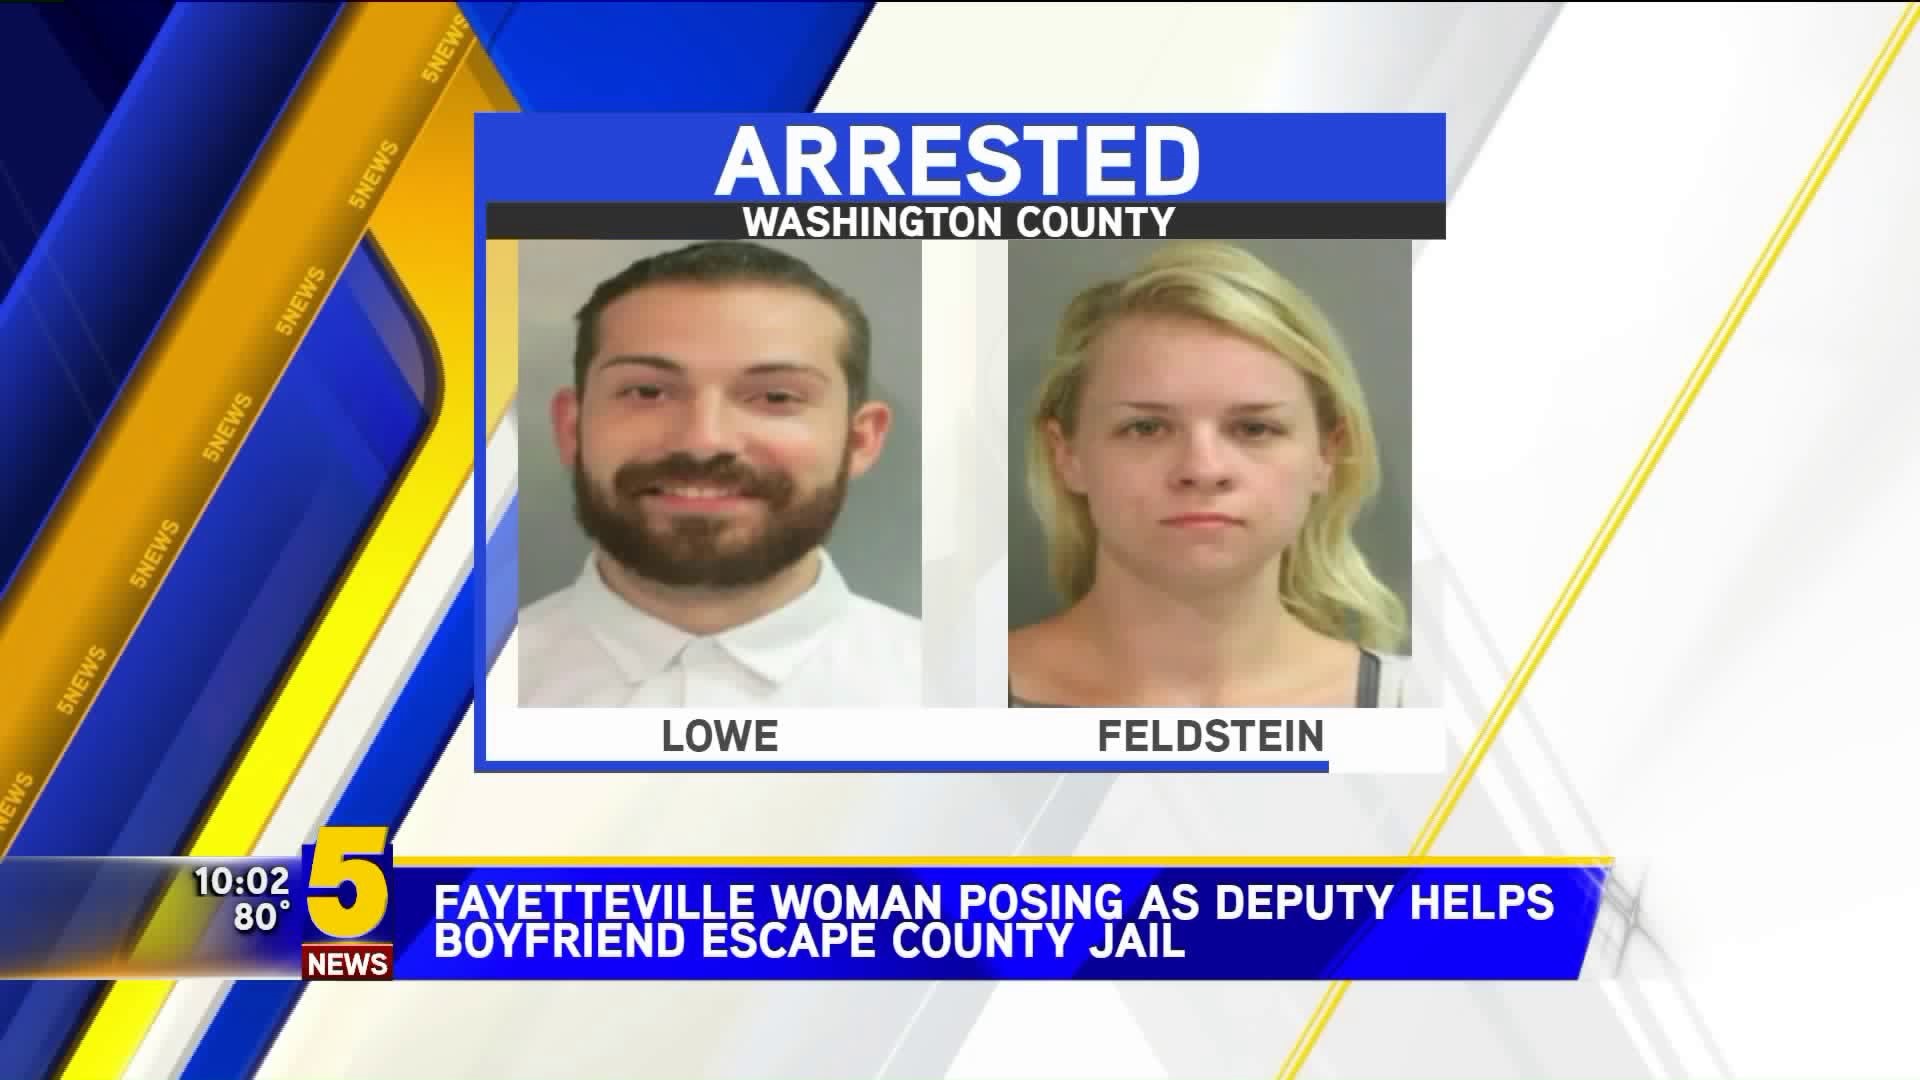 Fayetteville Woman Posing As Deputy Helps Boyfriend Escape County Jail